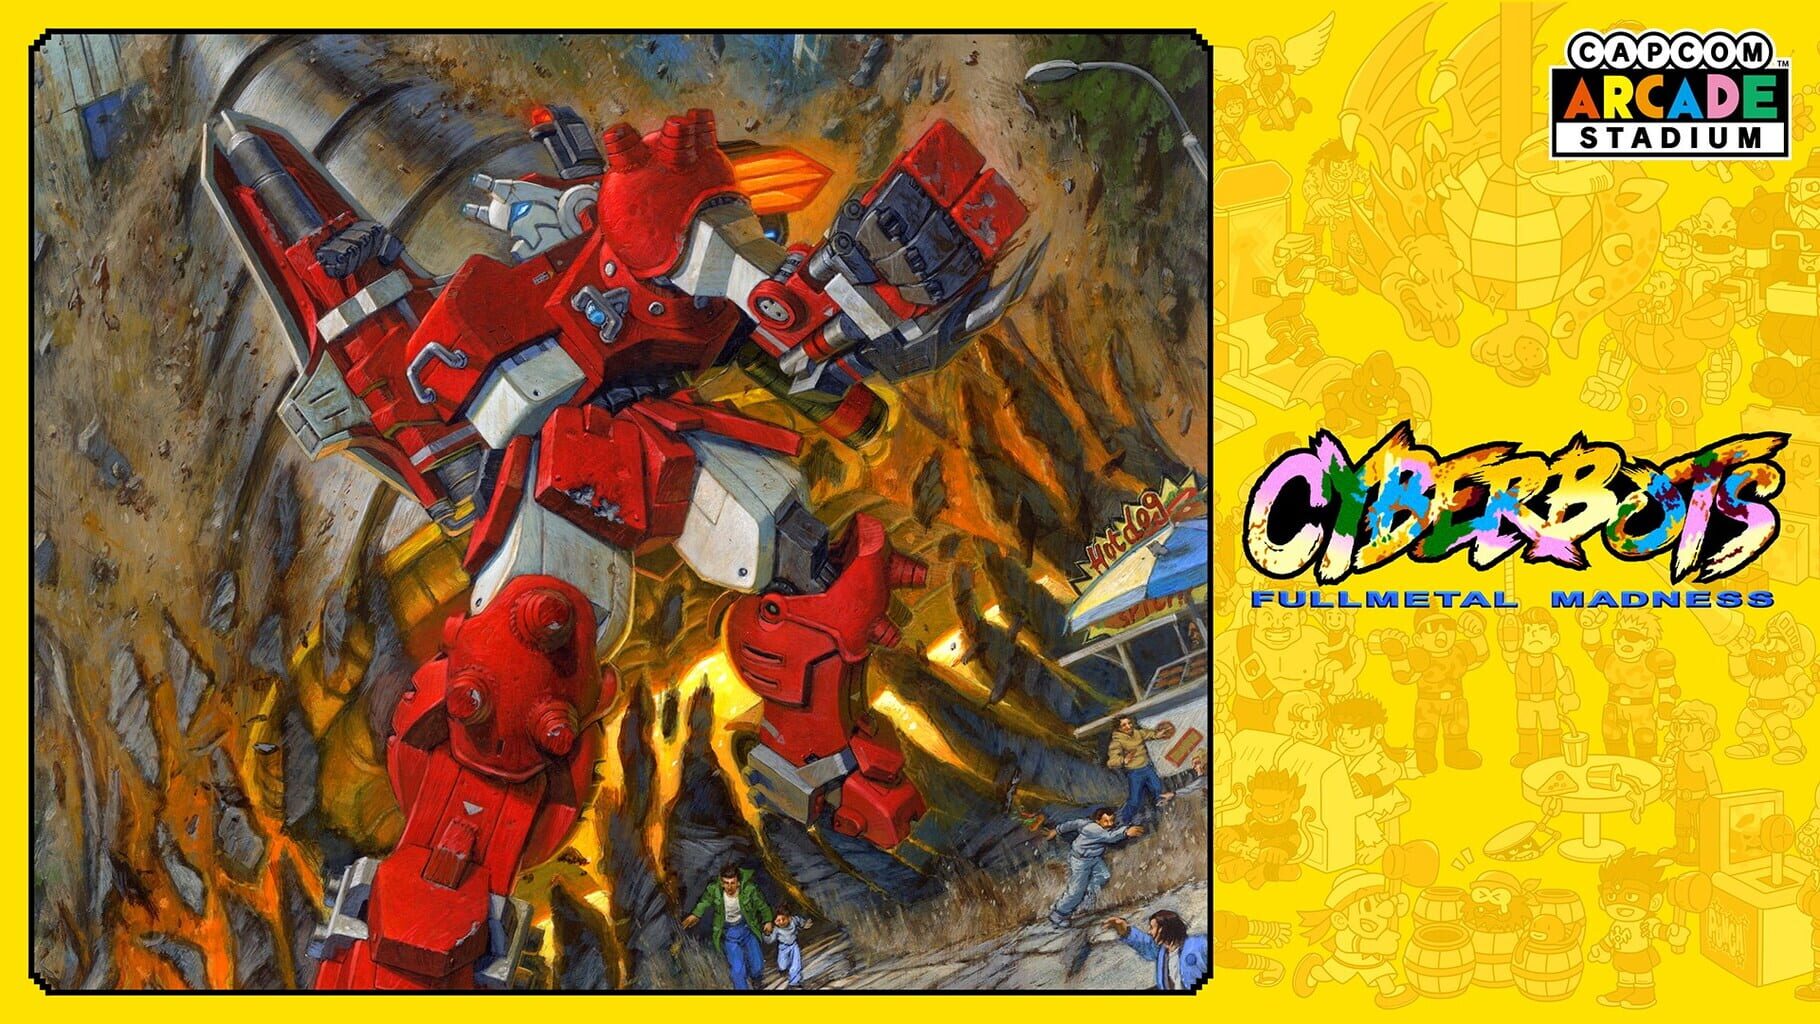 Capcom Arcade Stadium: Cyberbots - Fullmetal Madness artwork